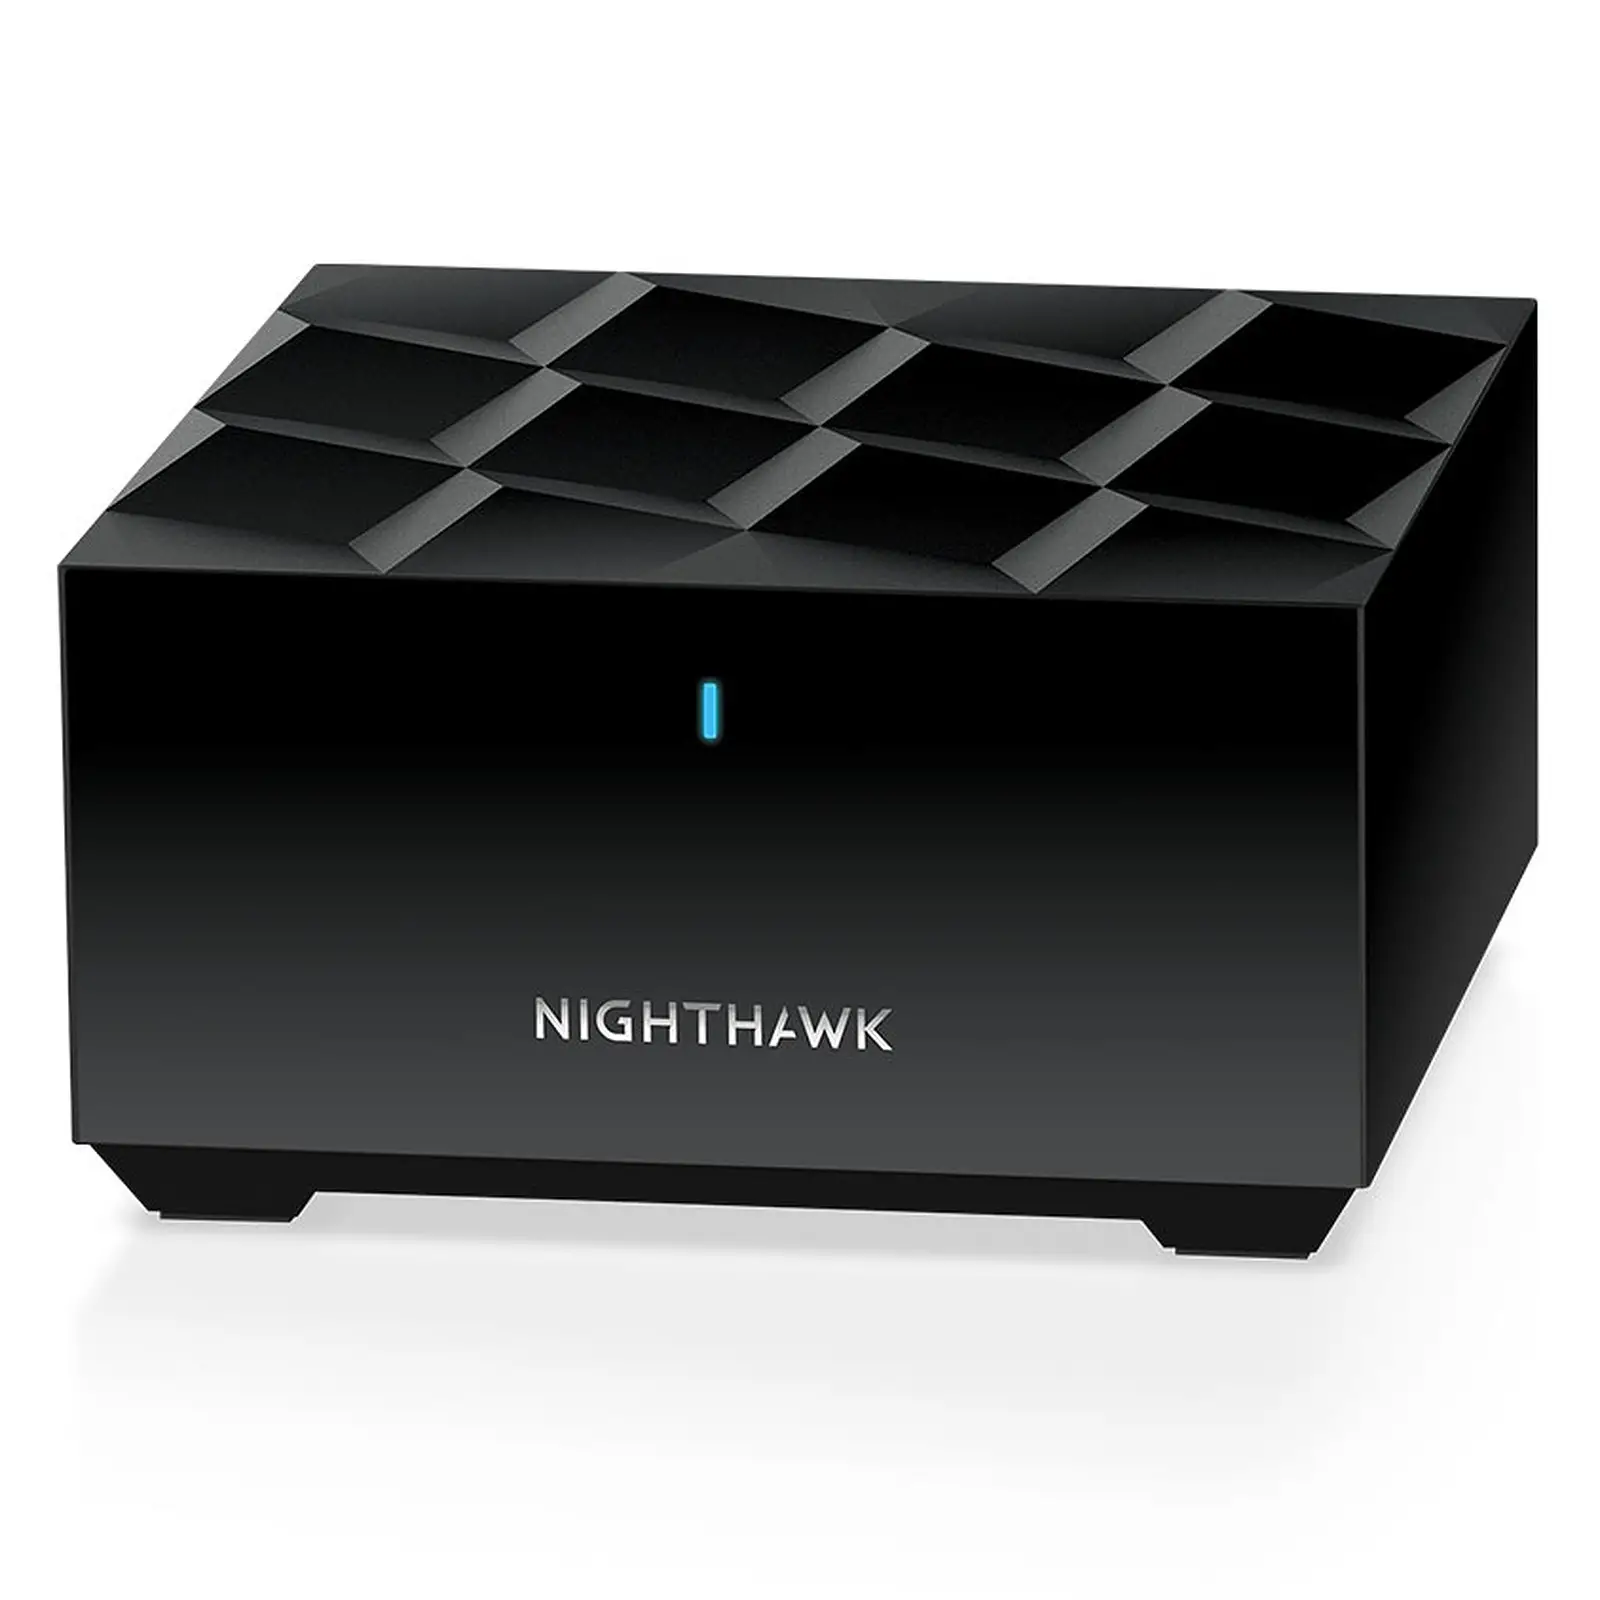 El Netgear nighthawk mesh wifi 6 adopta un color negro, poco habitual en los routers mesh